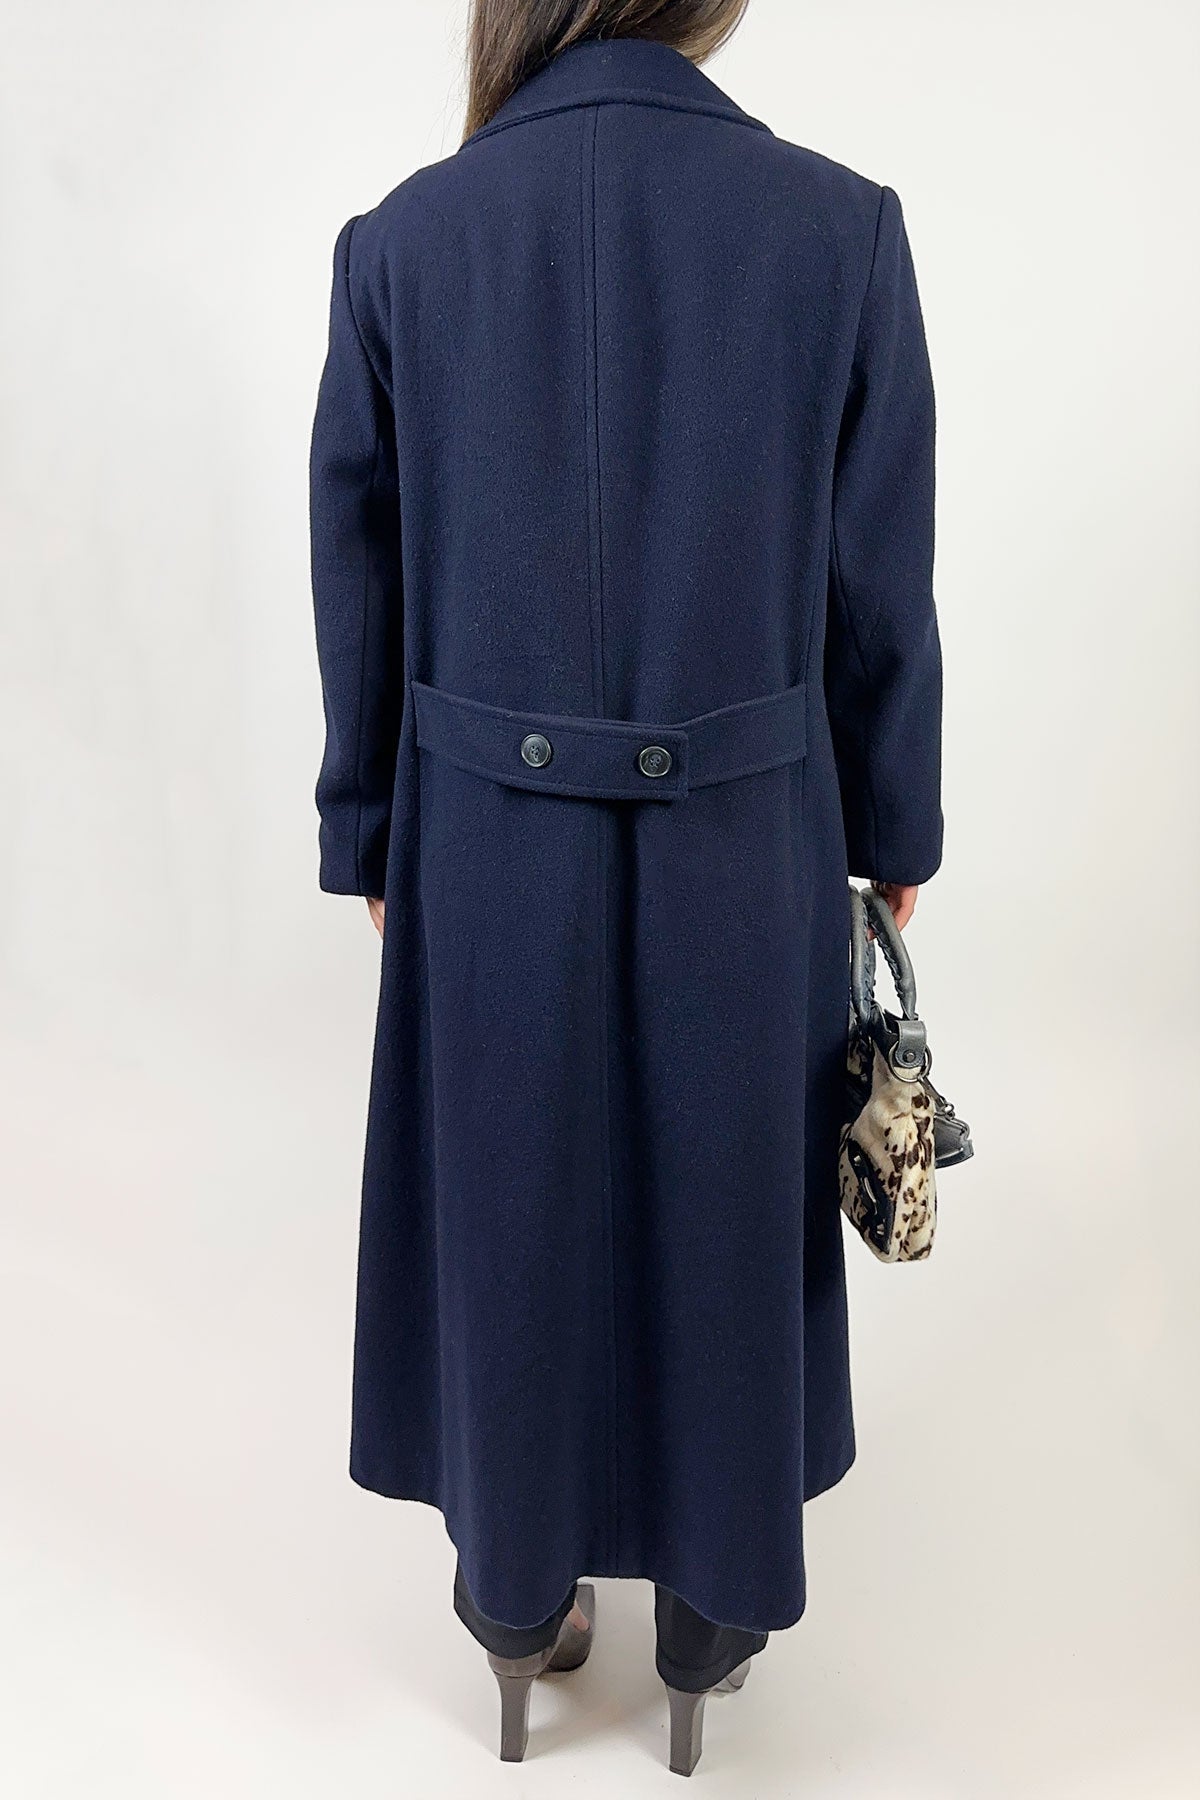 Navy Wool Coat / 16(US) - Jade Vintage